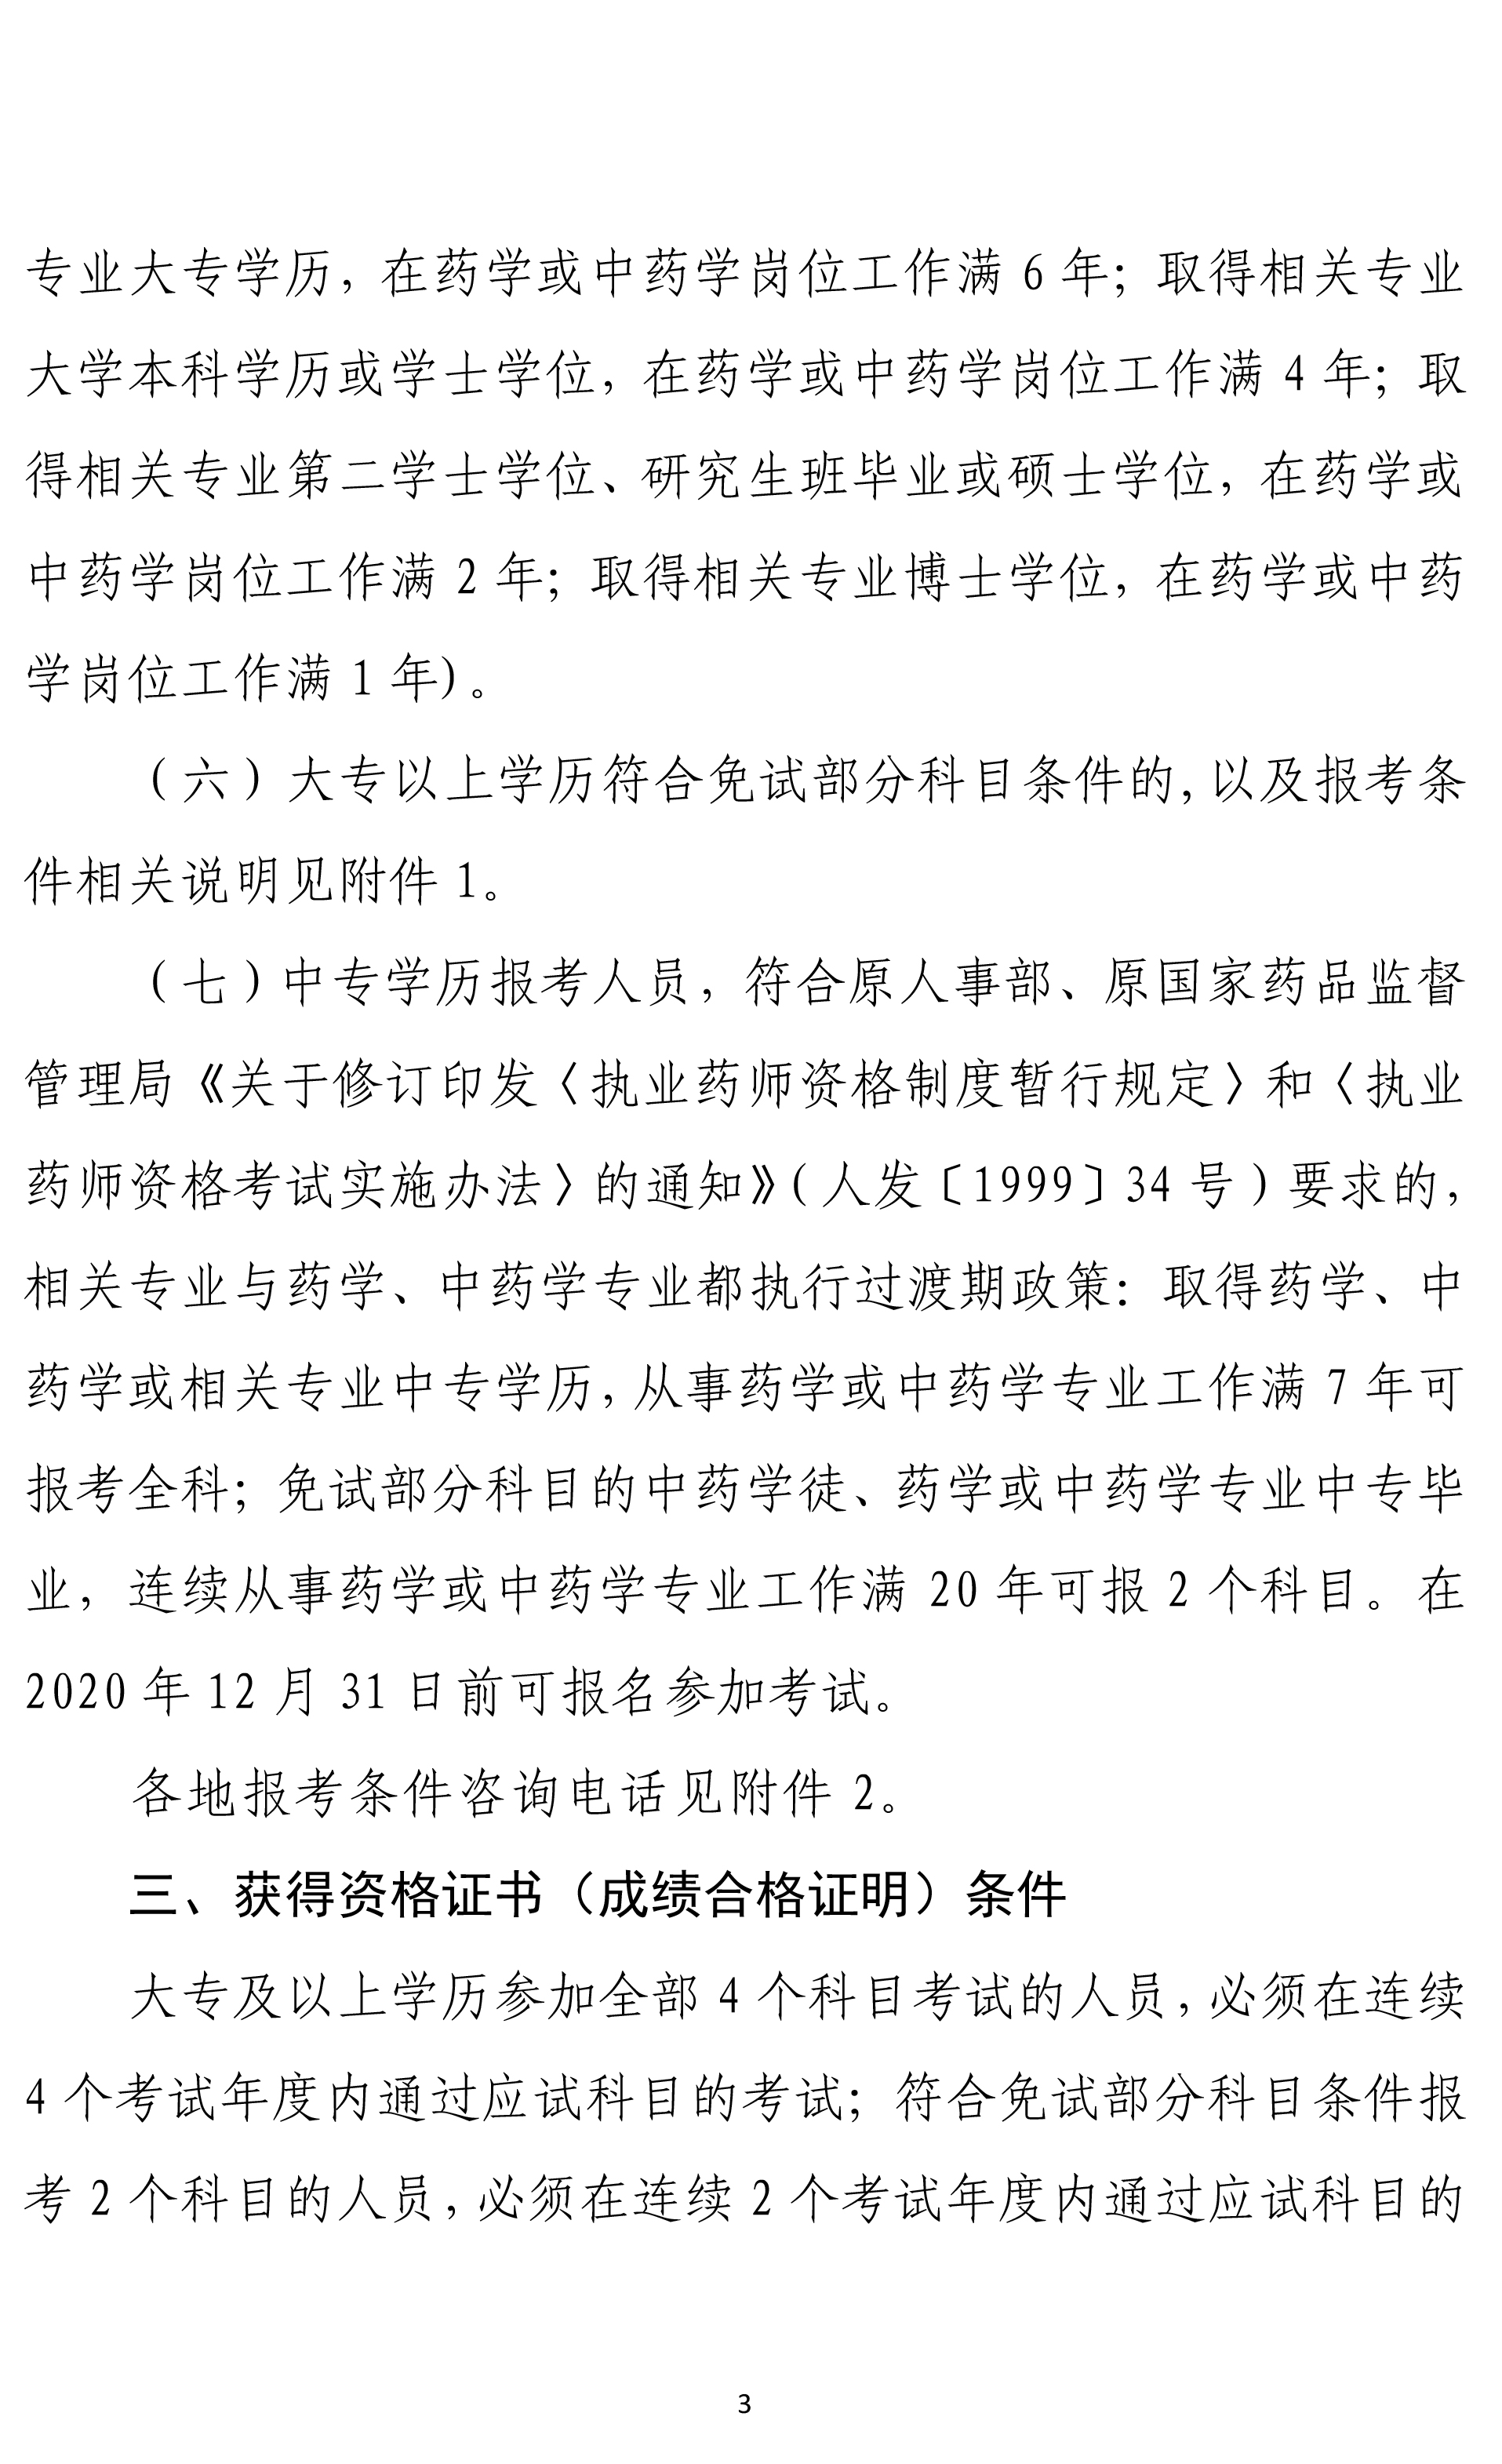 浙江省2019年度执业药师资格考试考务通知